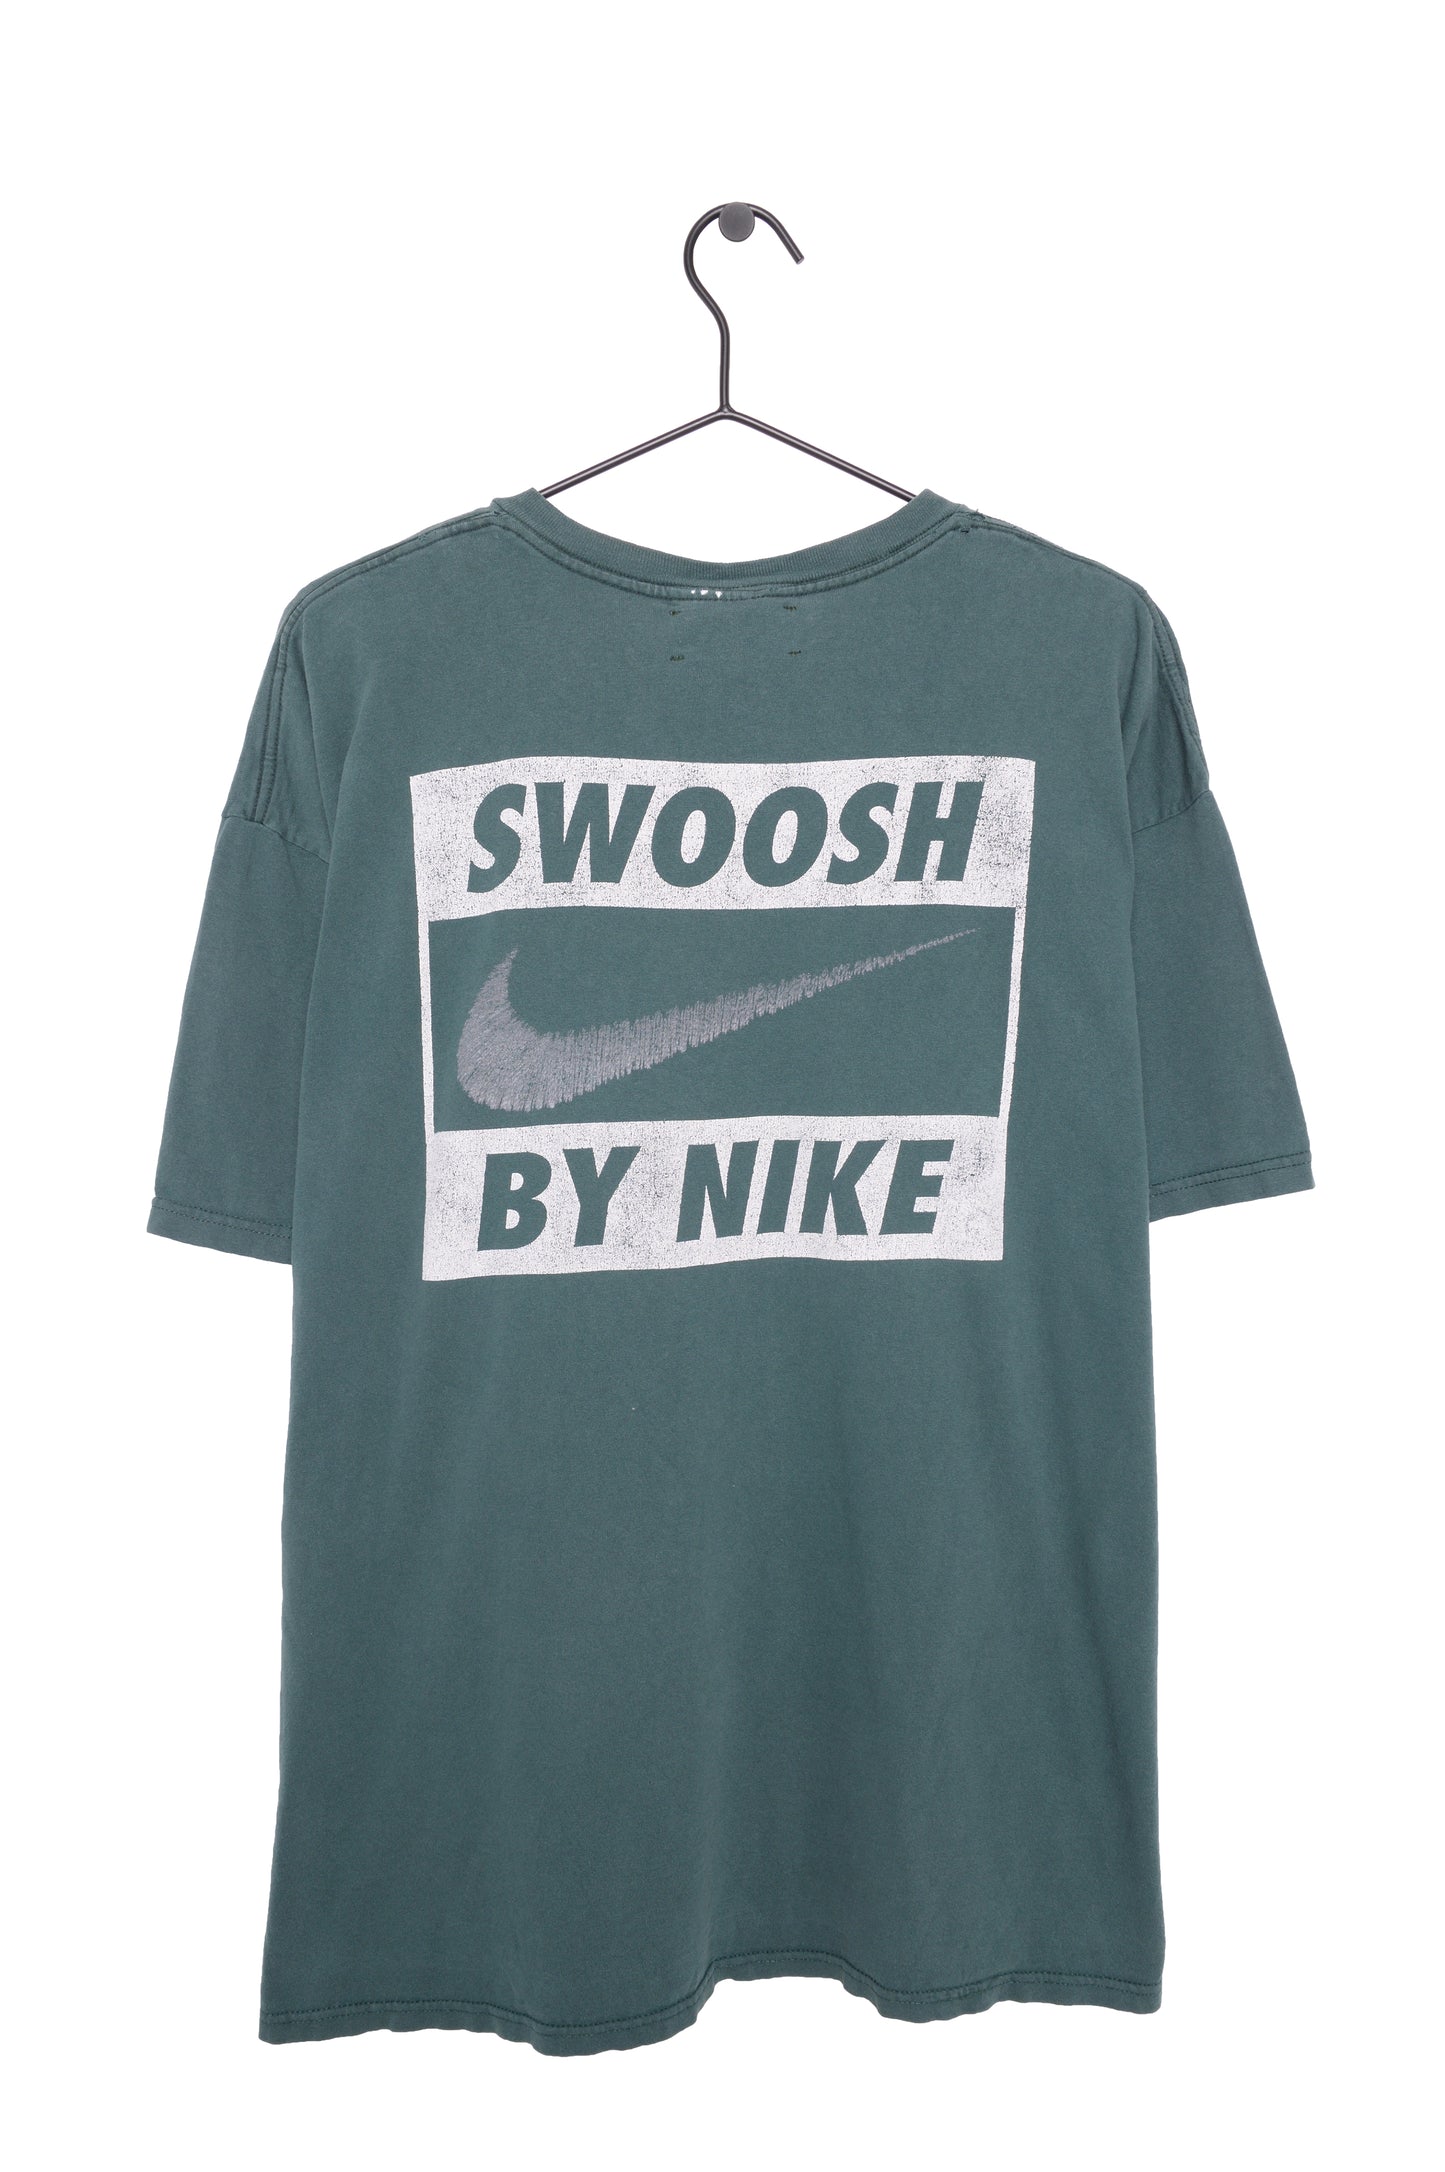 1980s Faded Nike Swoosh Tee